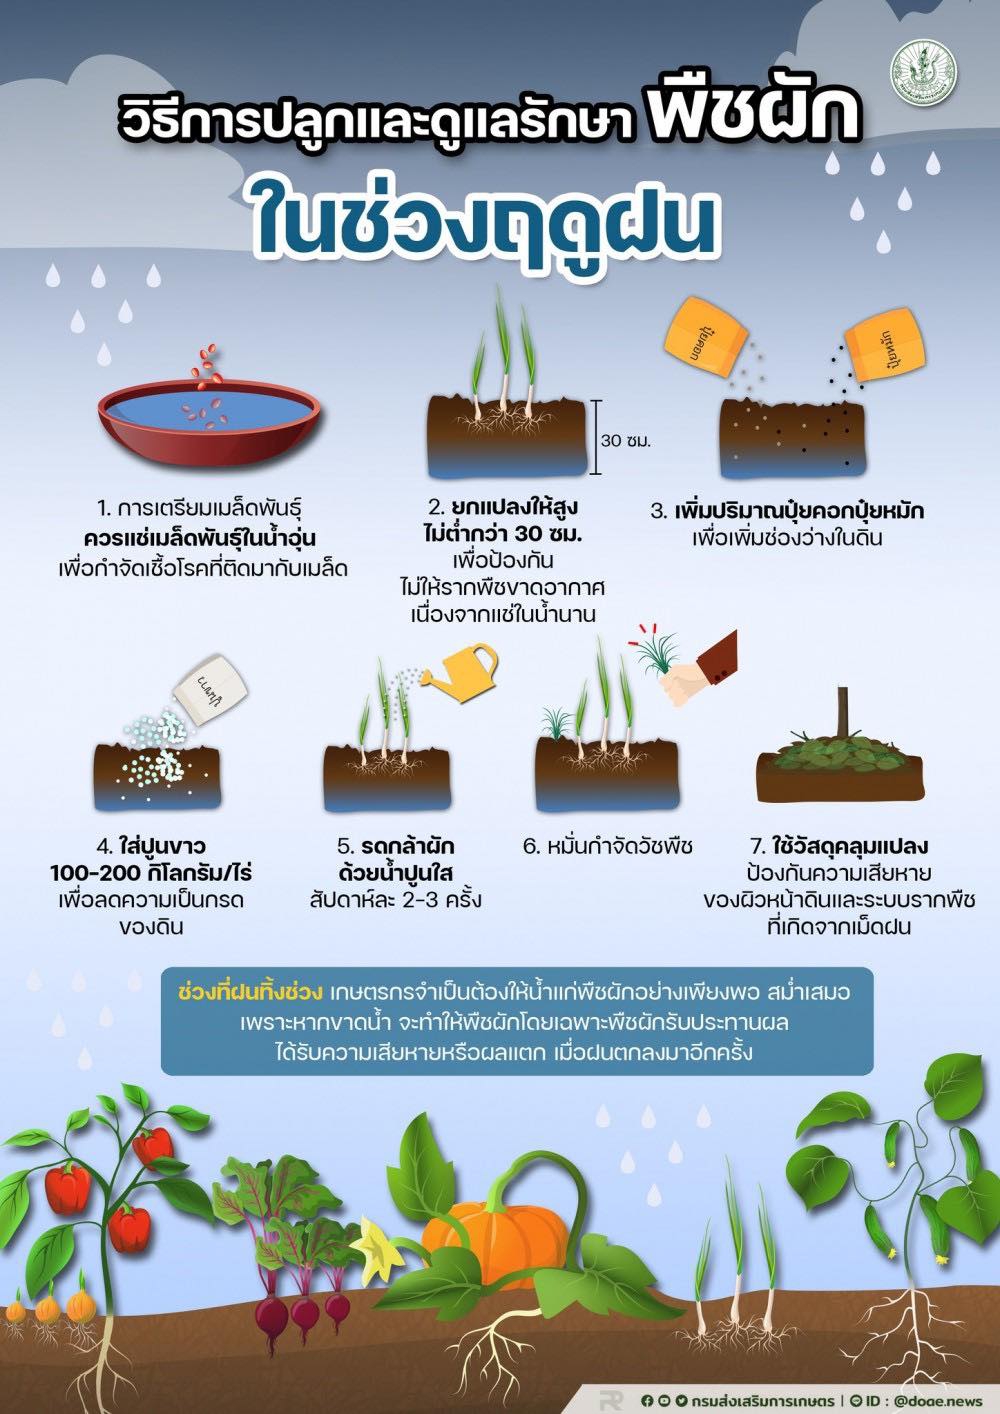 วิธีการปลูกและดูแลรักษา พืชผักในช่วงฤดูฝน